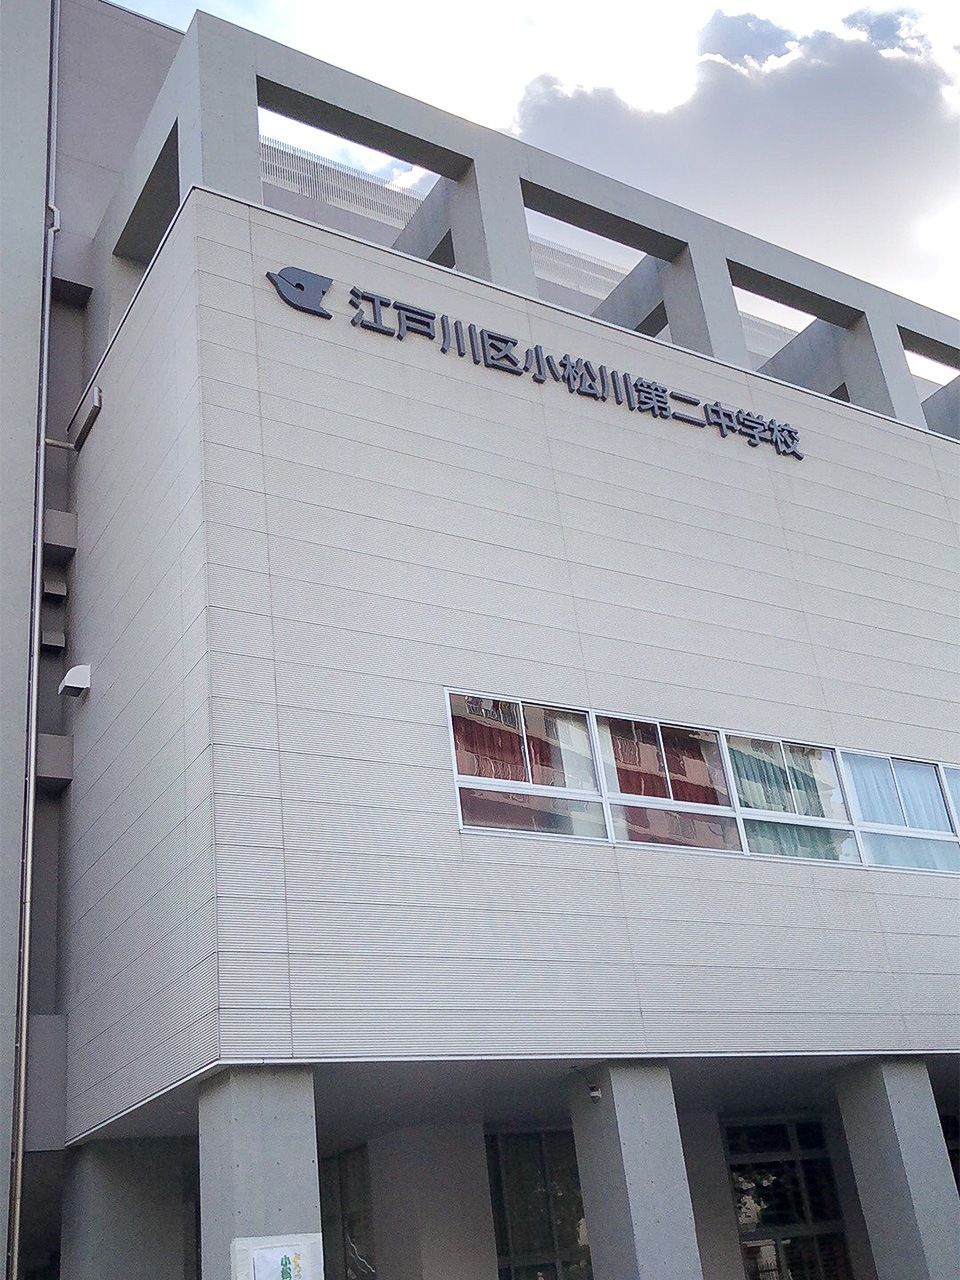 2018年4月啟用的江戶川區立小松川第二國中的新校舍，三個學年共16個班級，520名學童在此學習。（學生人數為2019年5月的資訊。攝影：nippon.com編輯部 高橋郁文）